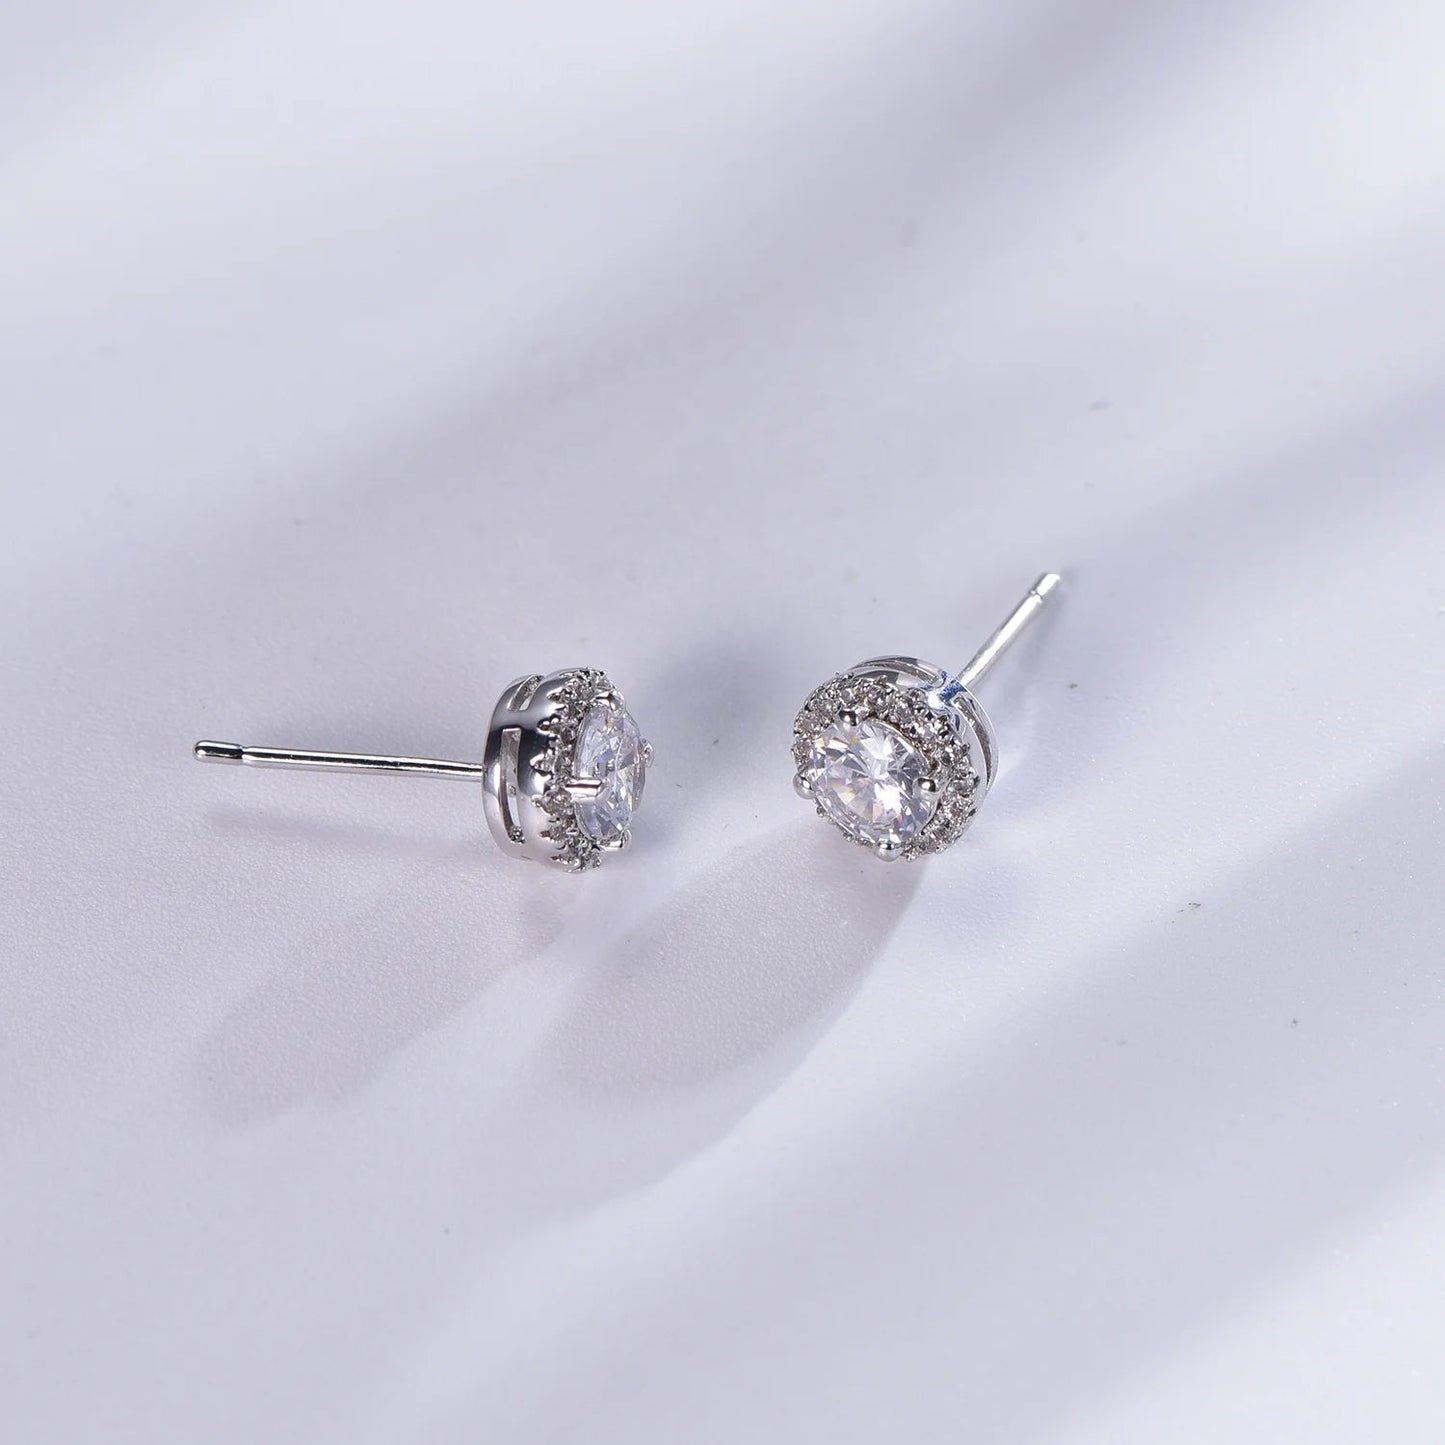 Sterling silver earrings 925 iced out earrings 925 sterling silver stud earrings Kirin Jewelry